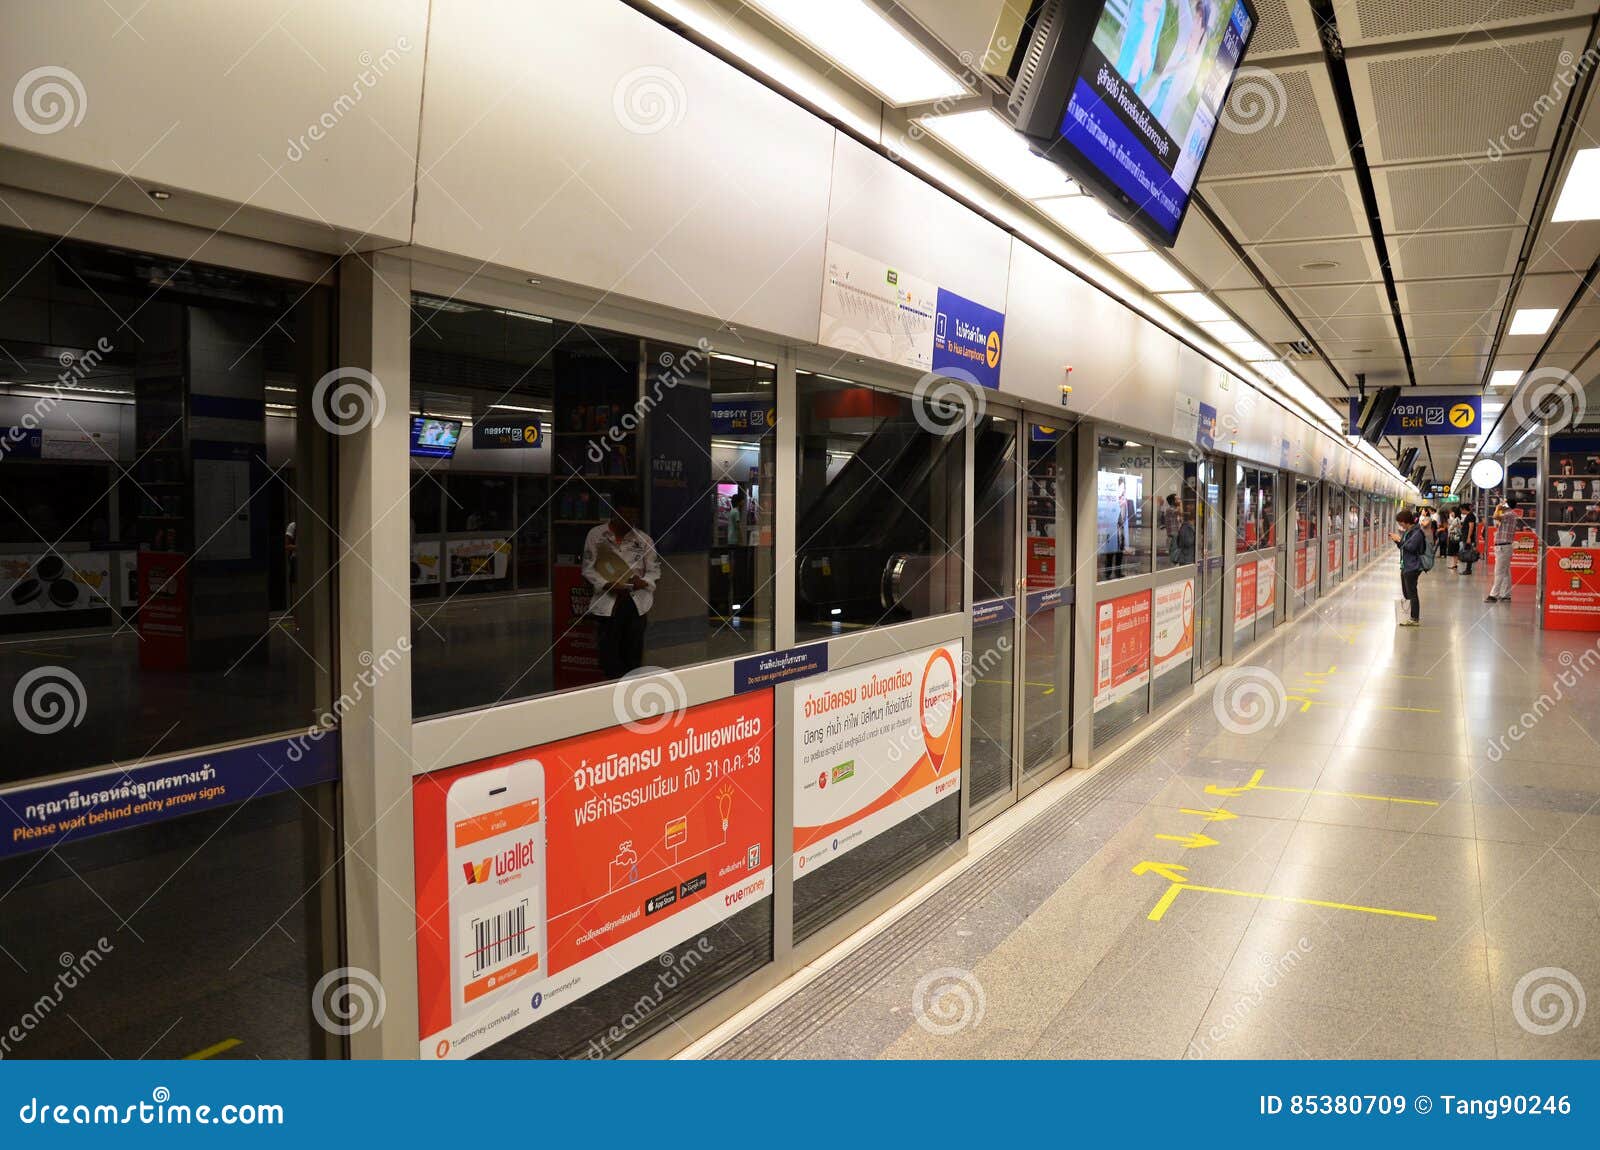 Станции метро бангкок. Станции метро Бангкока. Метро в Бангкоке внутри. Метро изнутри Бангкок. Станции метро из аэропорта Бангкока.